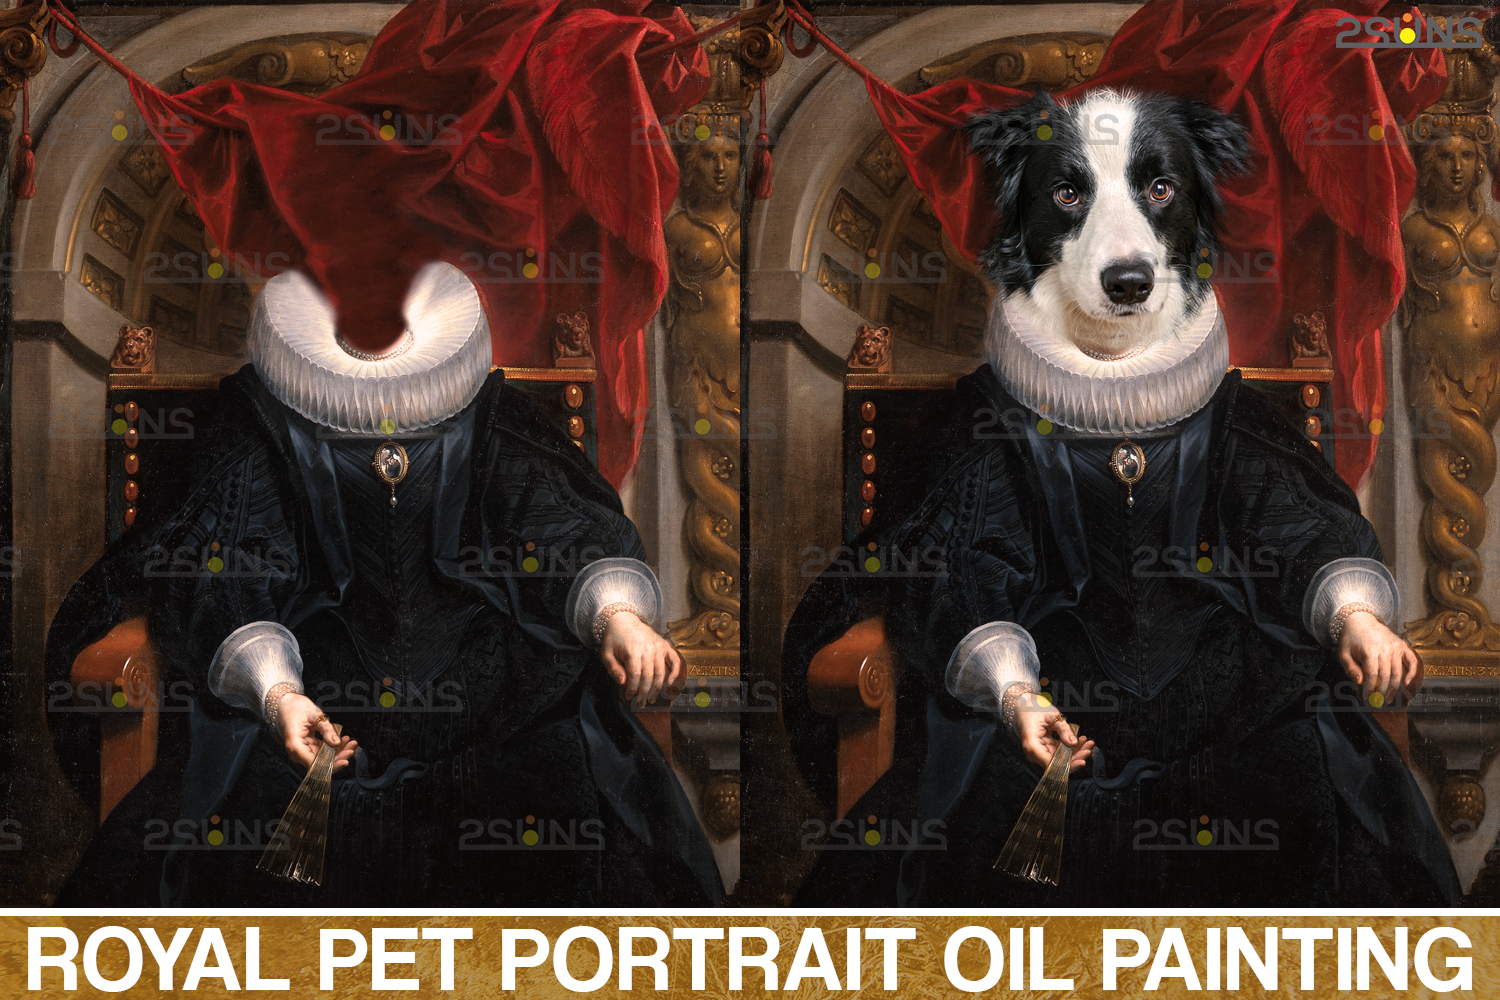 Royal Pet Portrait templates vol 7 Pet Painting By 2SUNS  